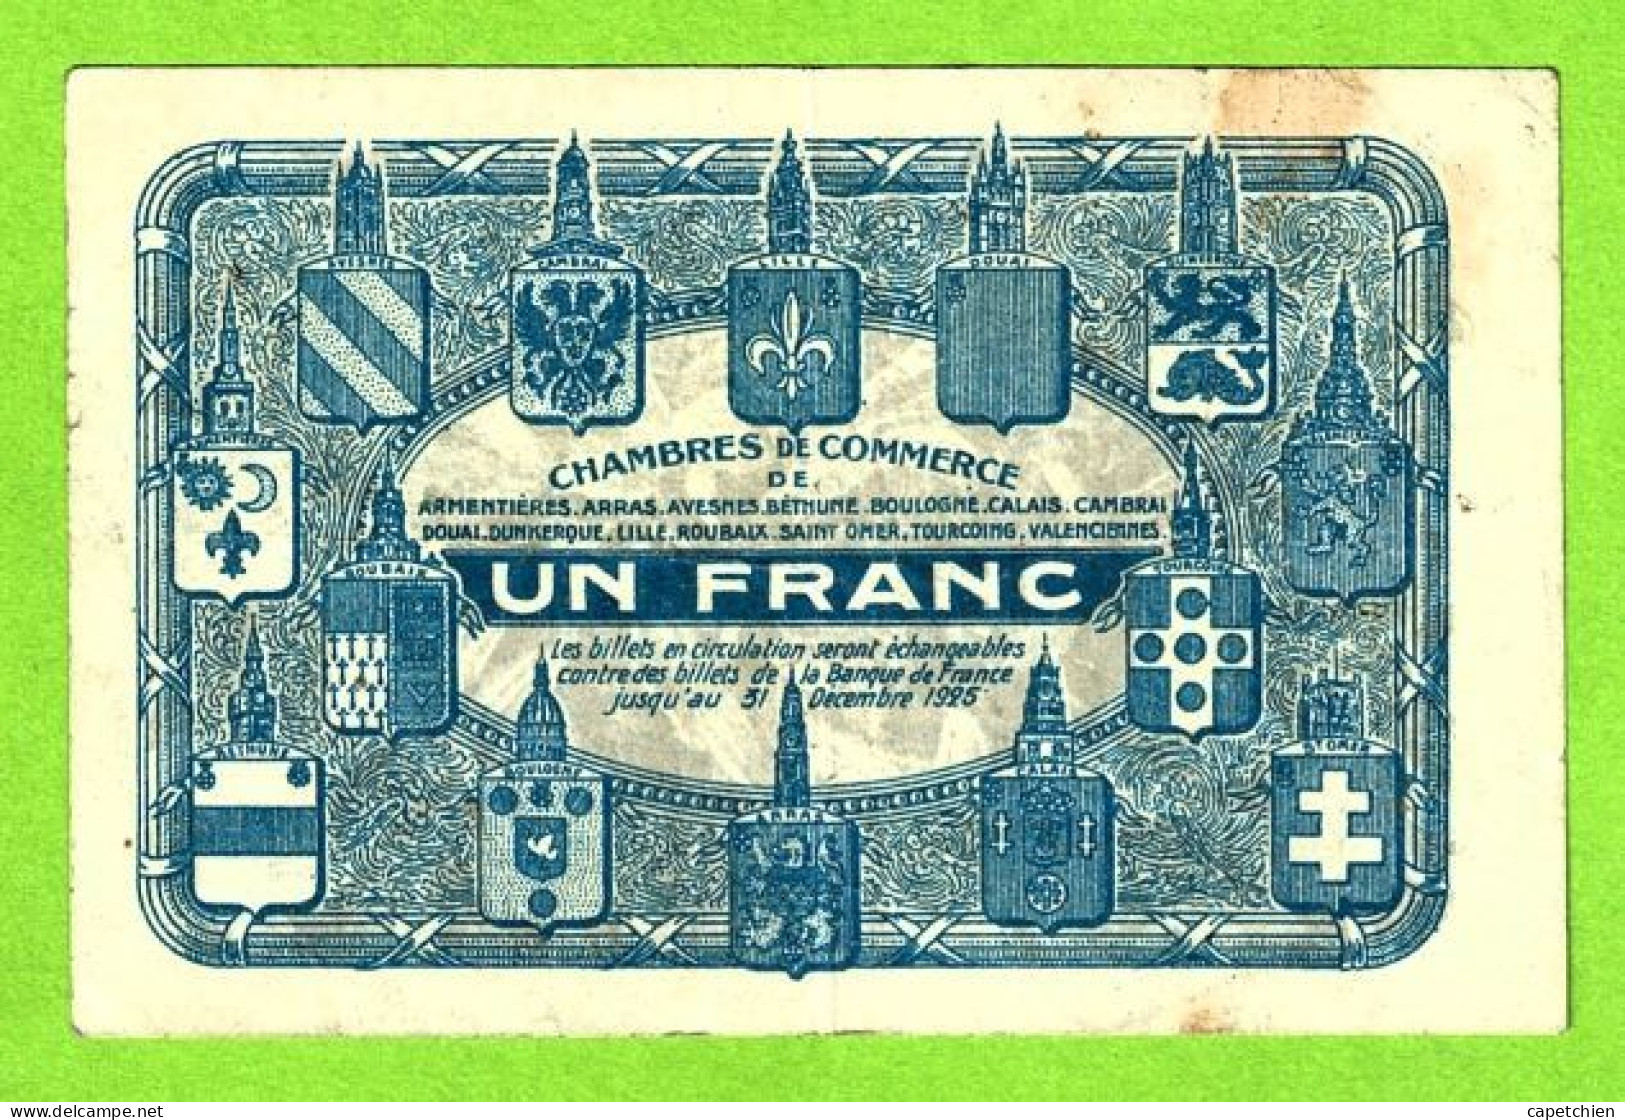 FRANCE/ CHAMBRES DE COMMERCE De NORD -PAS De CALAIS / 1 FRANC / 2,239,328 SERIE A - Handelskammer